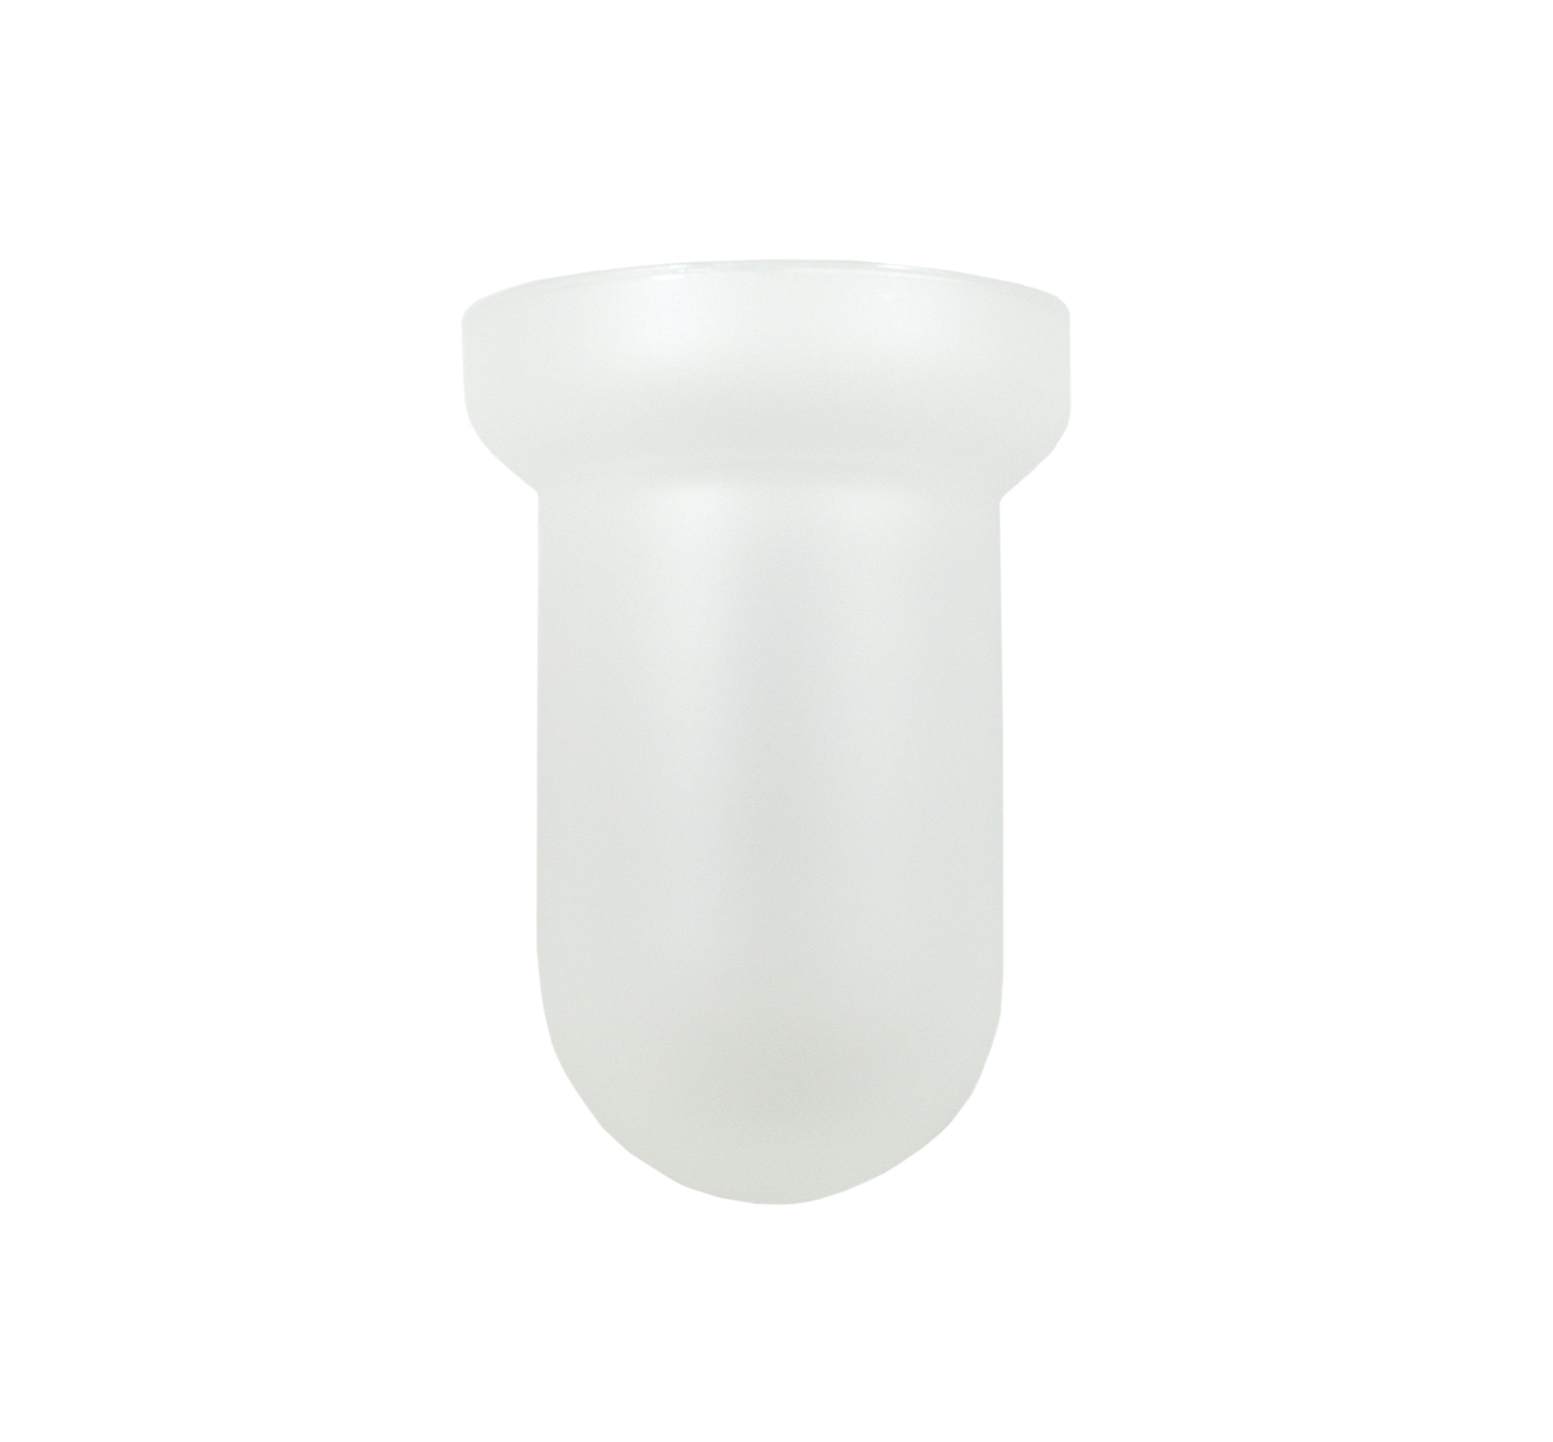 Bicchiere porta spazzolini di ricambio in vetro satinato per bagno diametro 6 cm